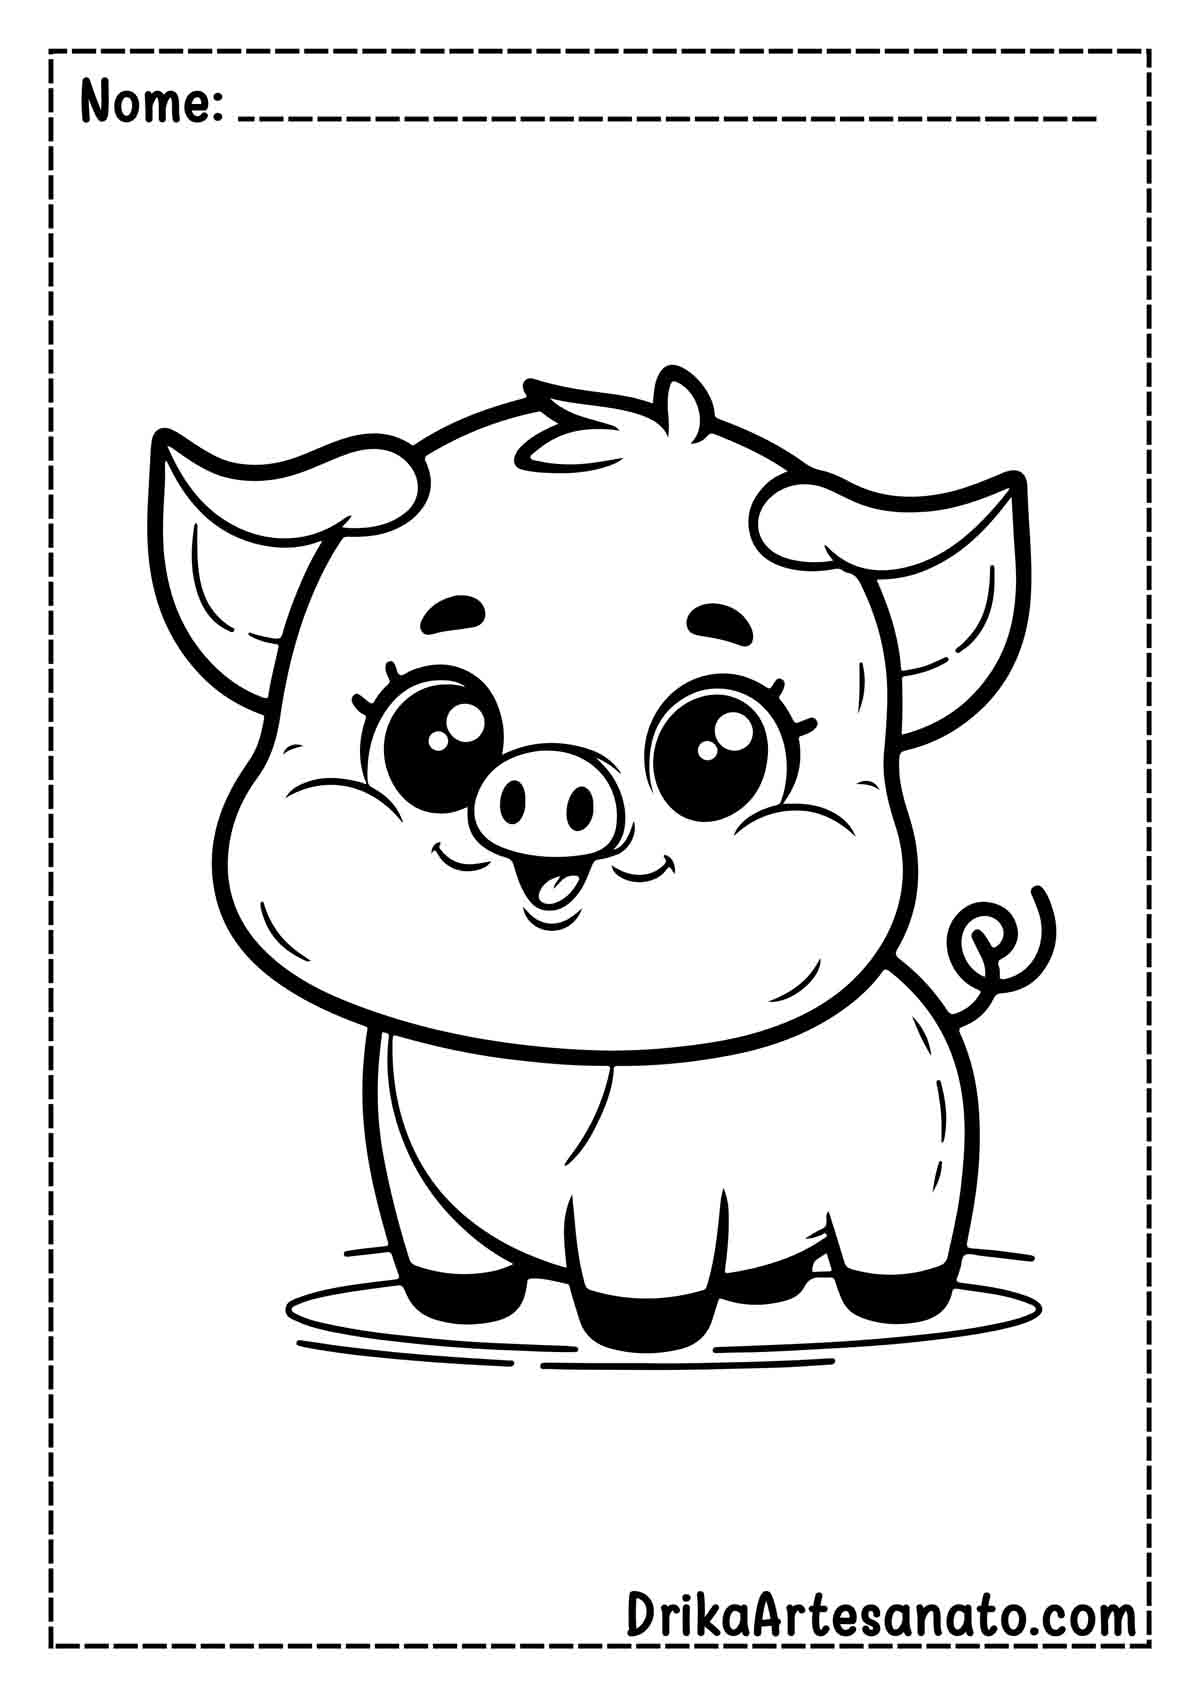 Desenho de Porco Simples para Imprimir